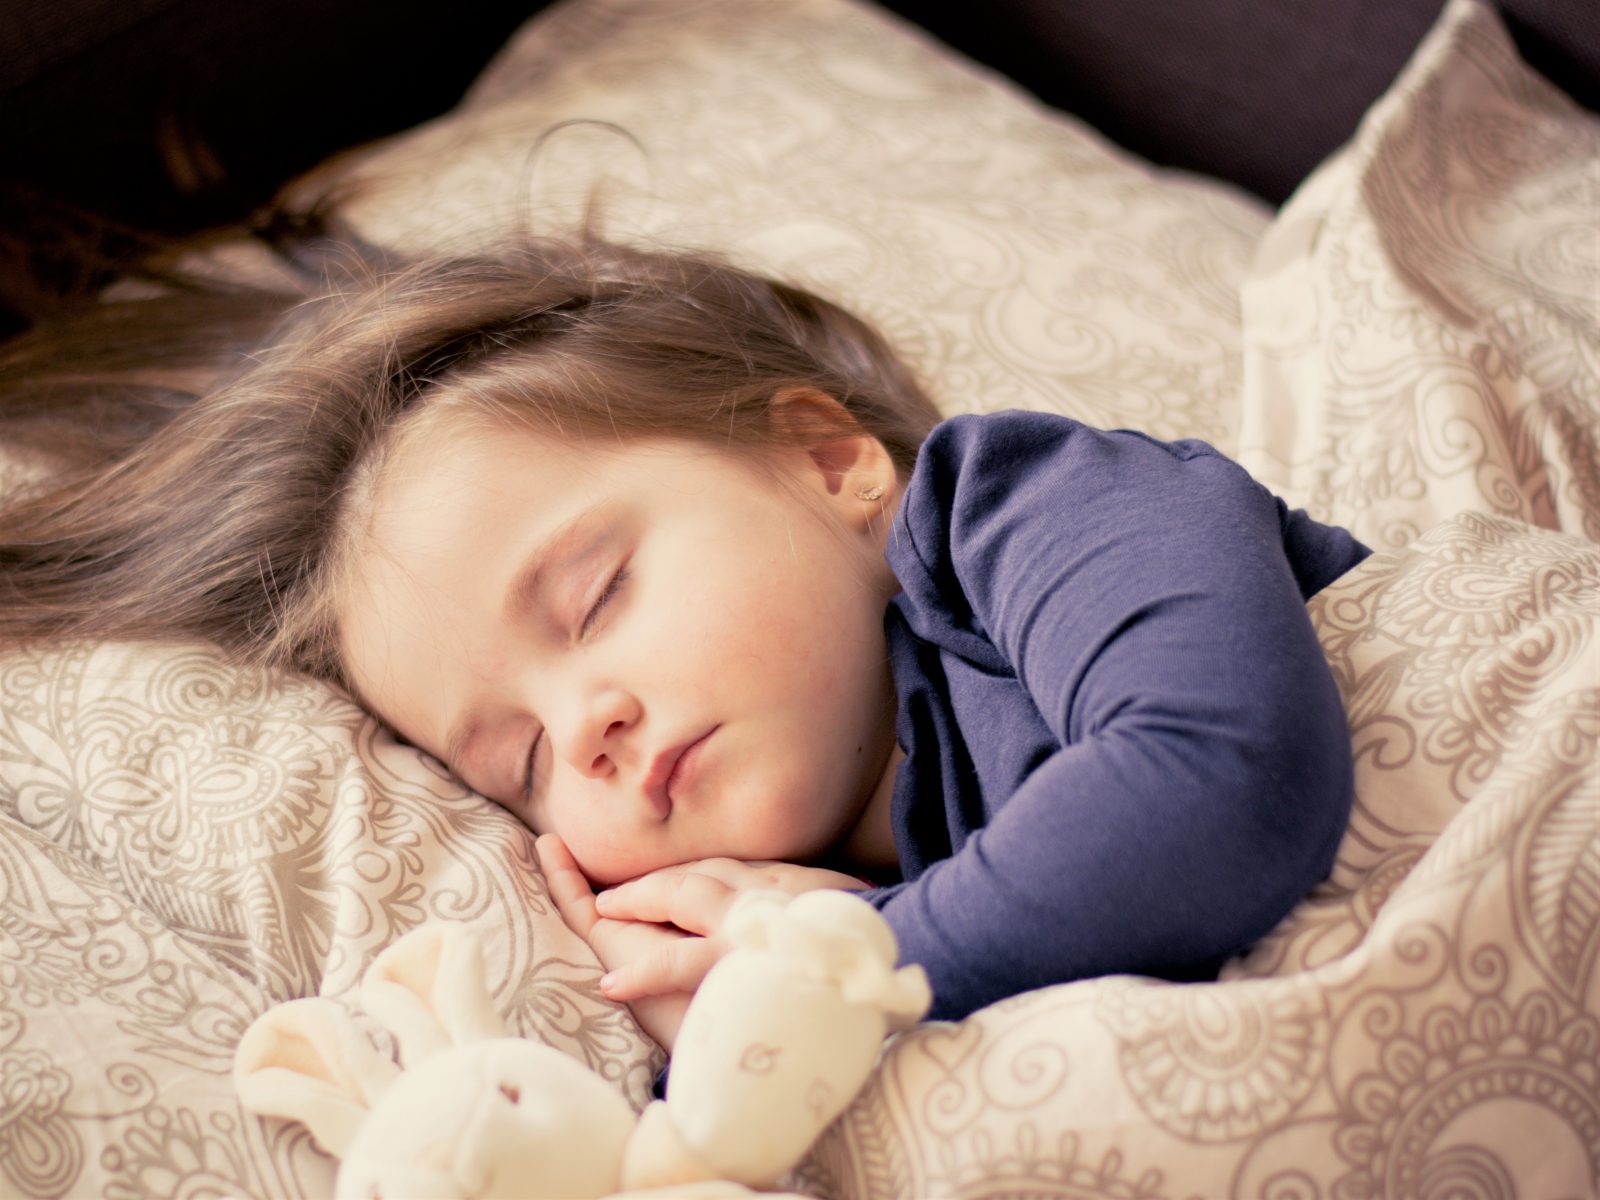 Как наладить нормальный сон ребенка от 1 до 4 лет?